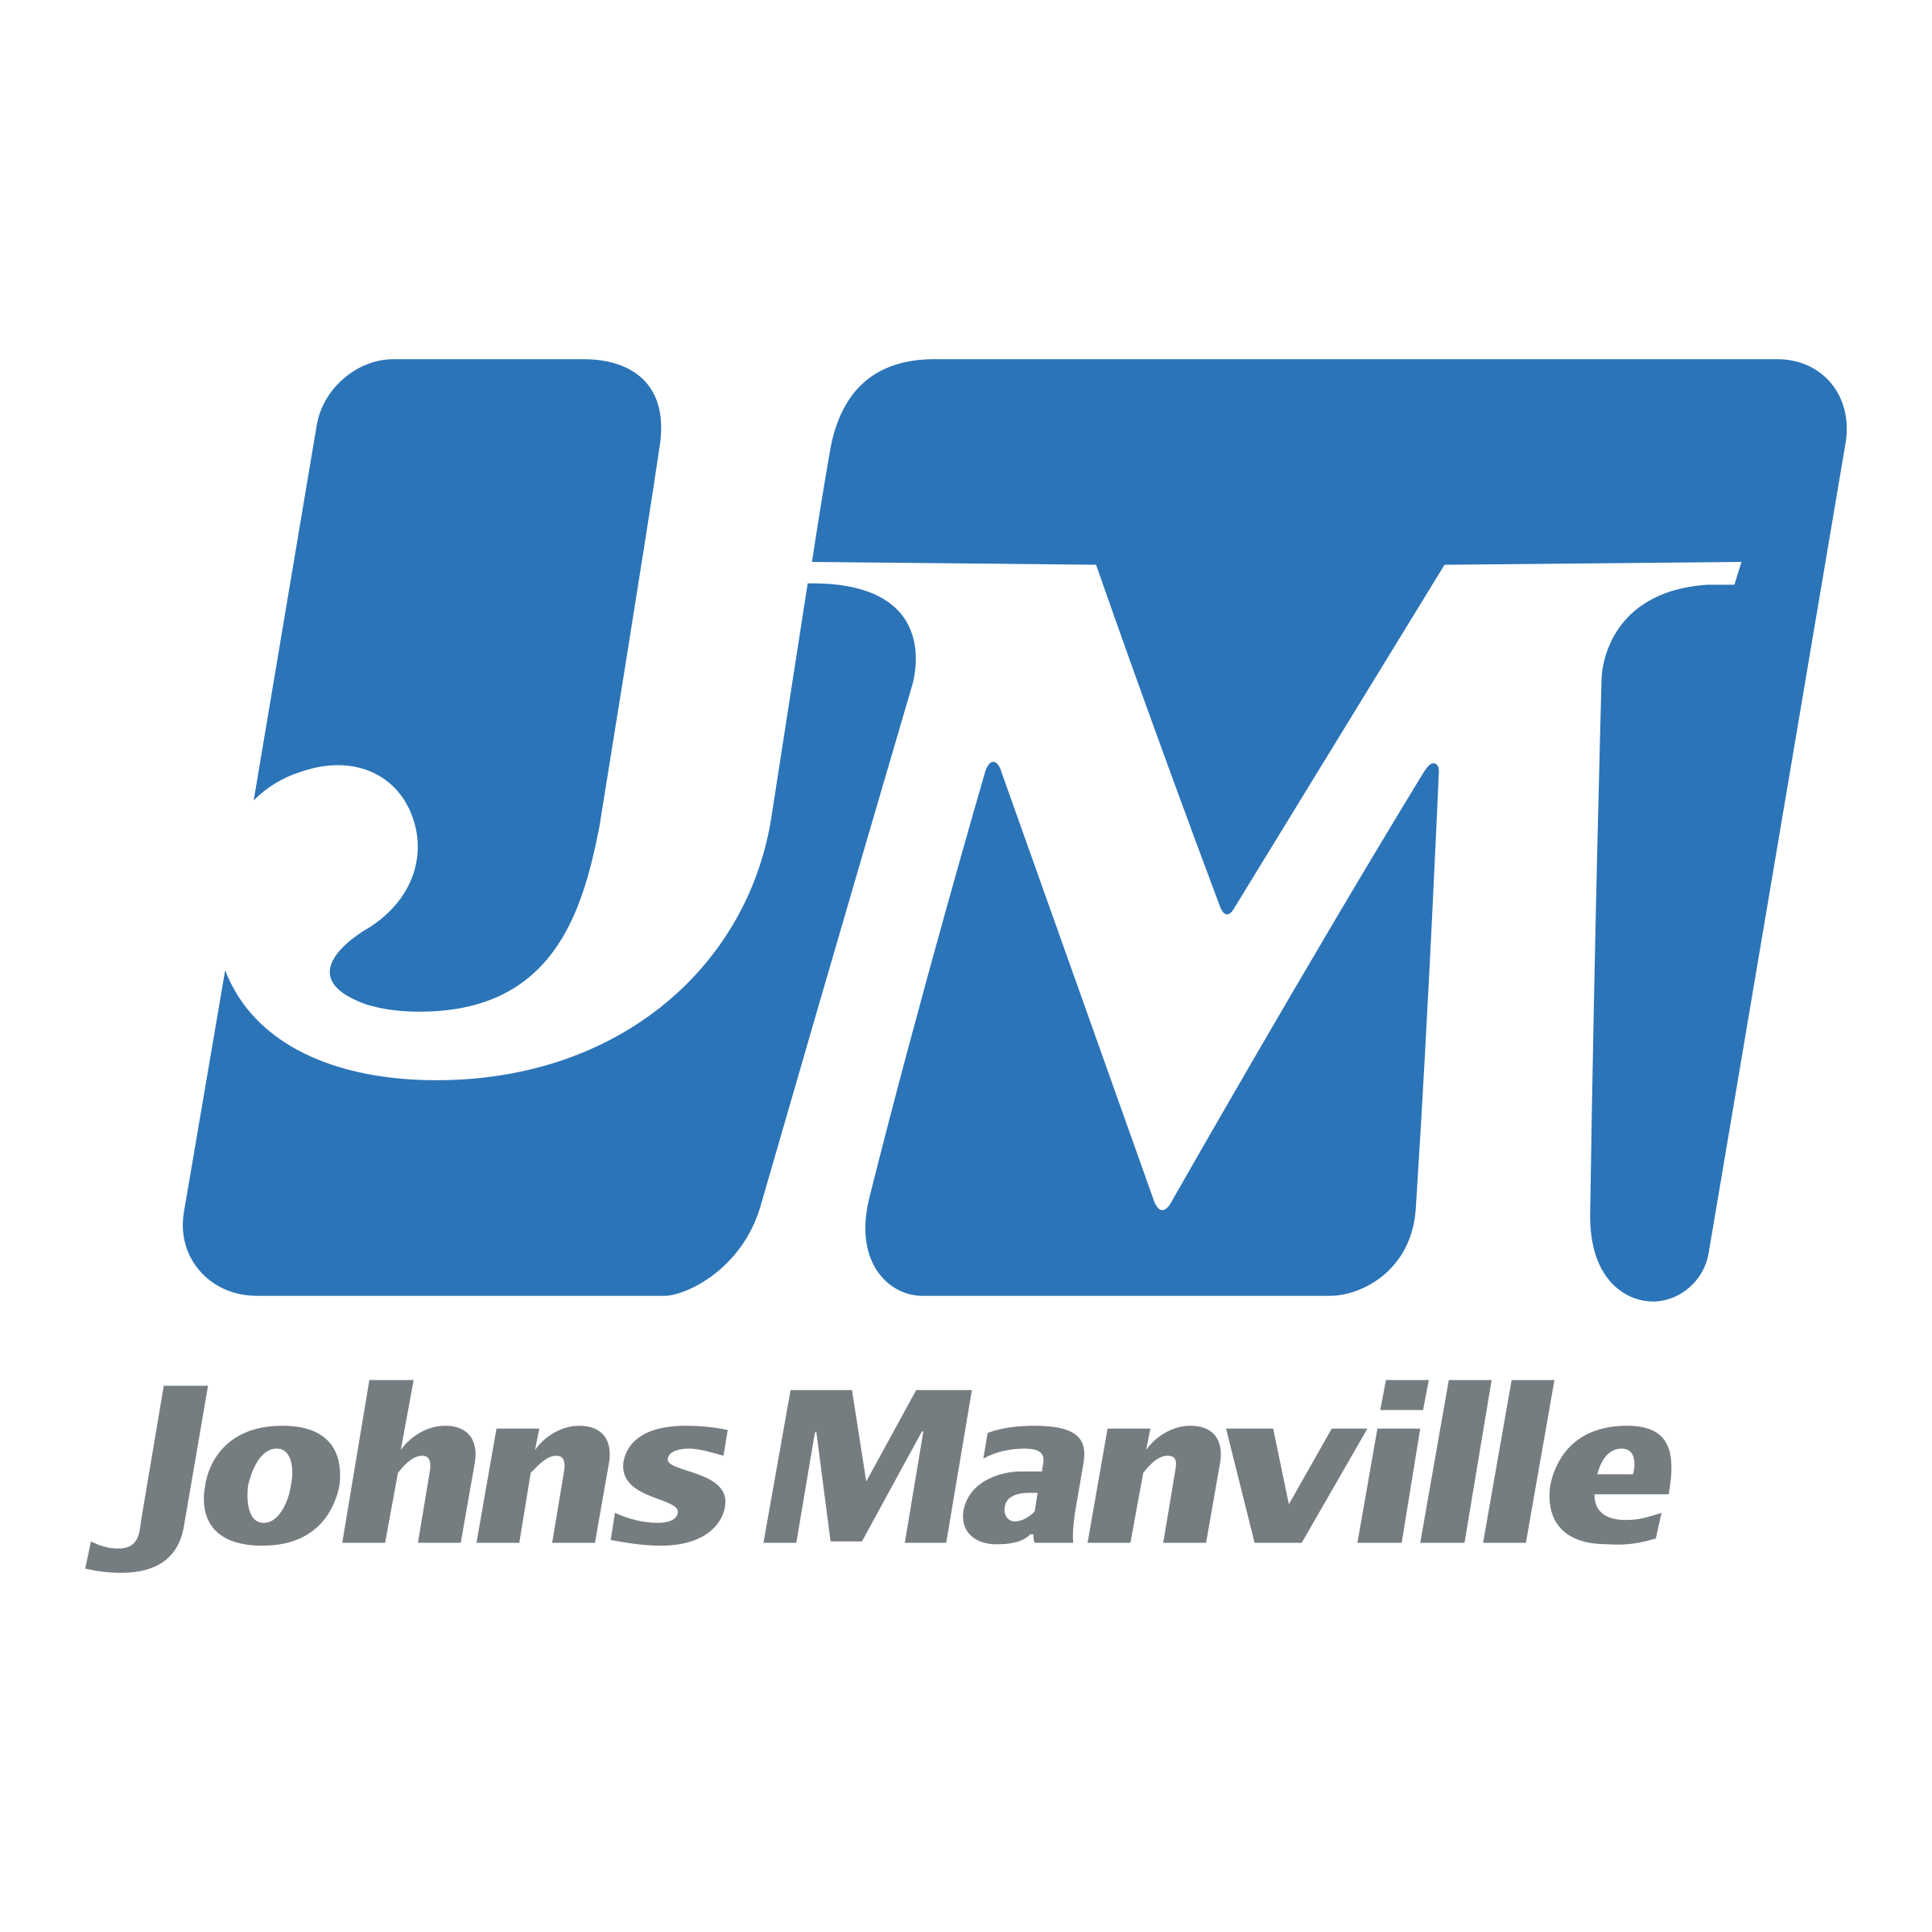 johns-manville-1-logo-png-transparent.png